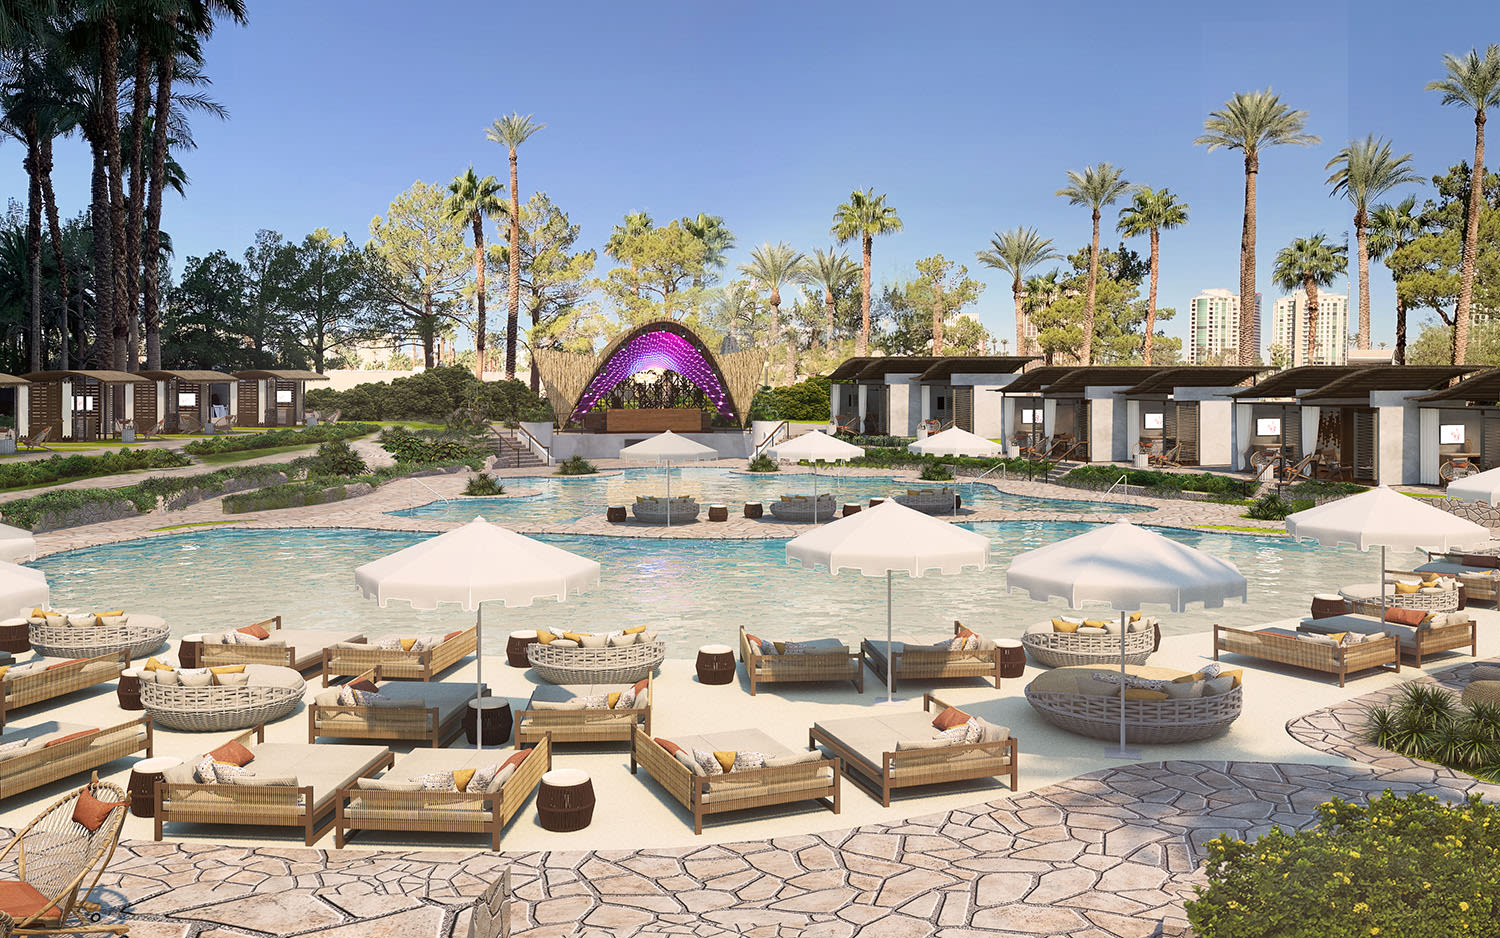 Virgin Hotels Las Vegas pool complex